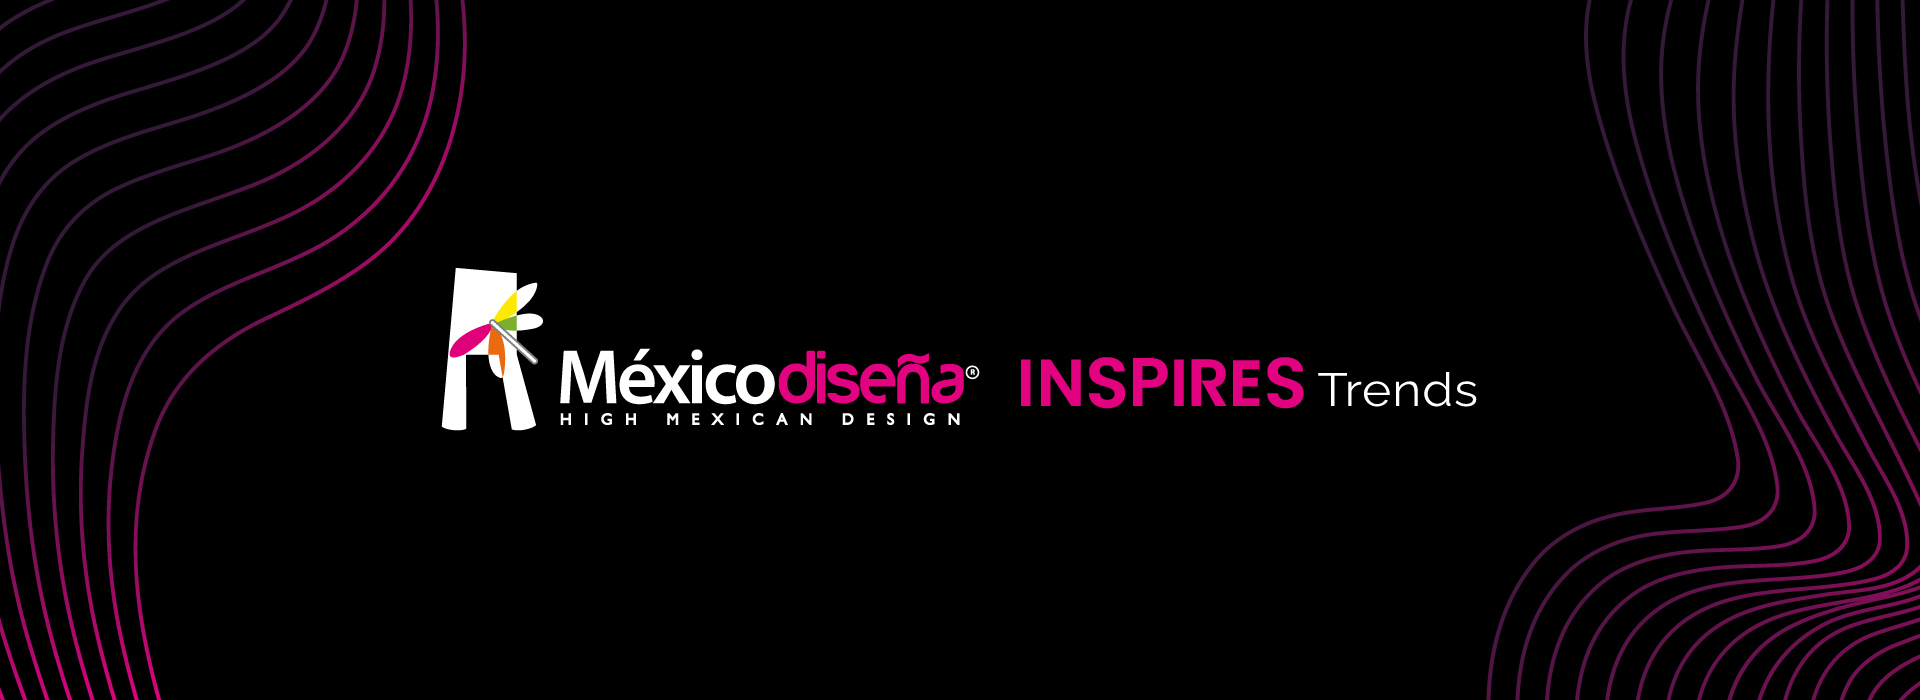 Mexico Diseña